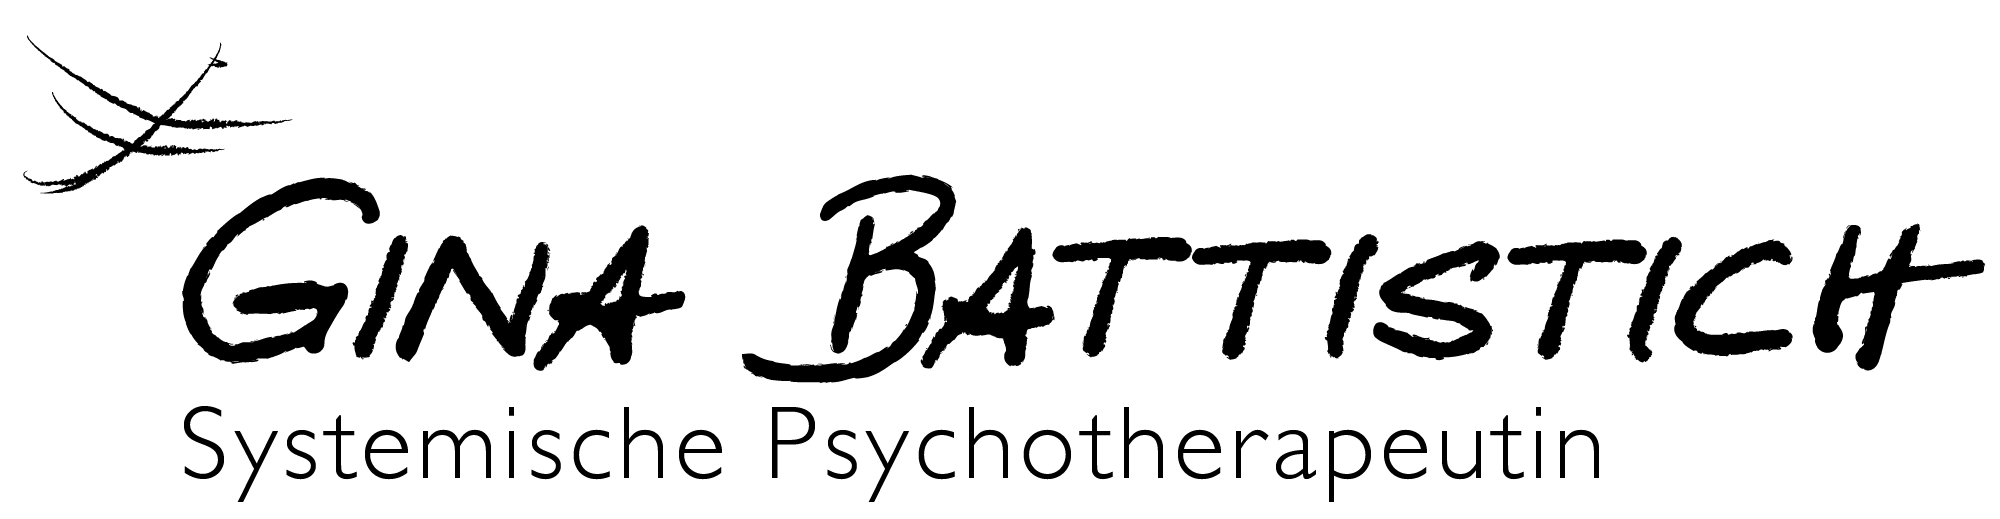 Psychotherapie Battistich Logo